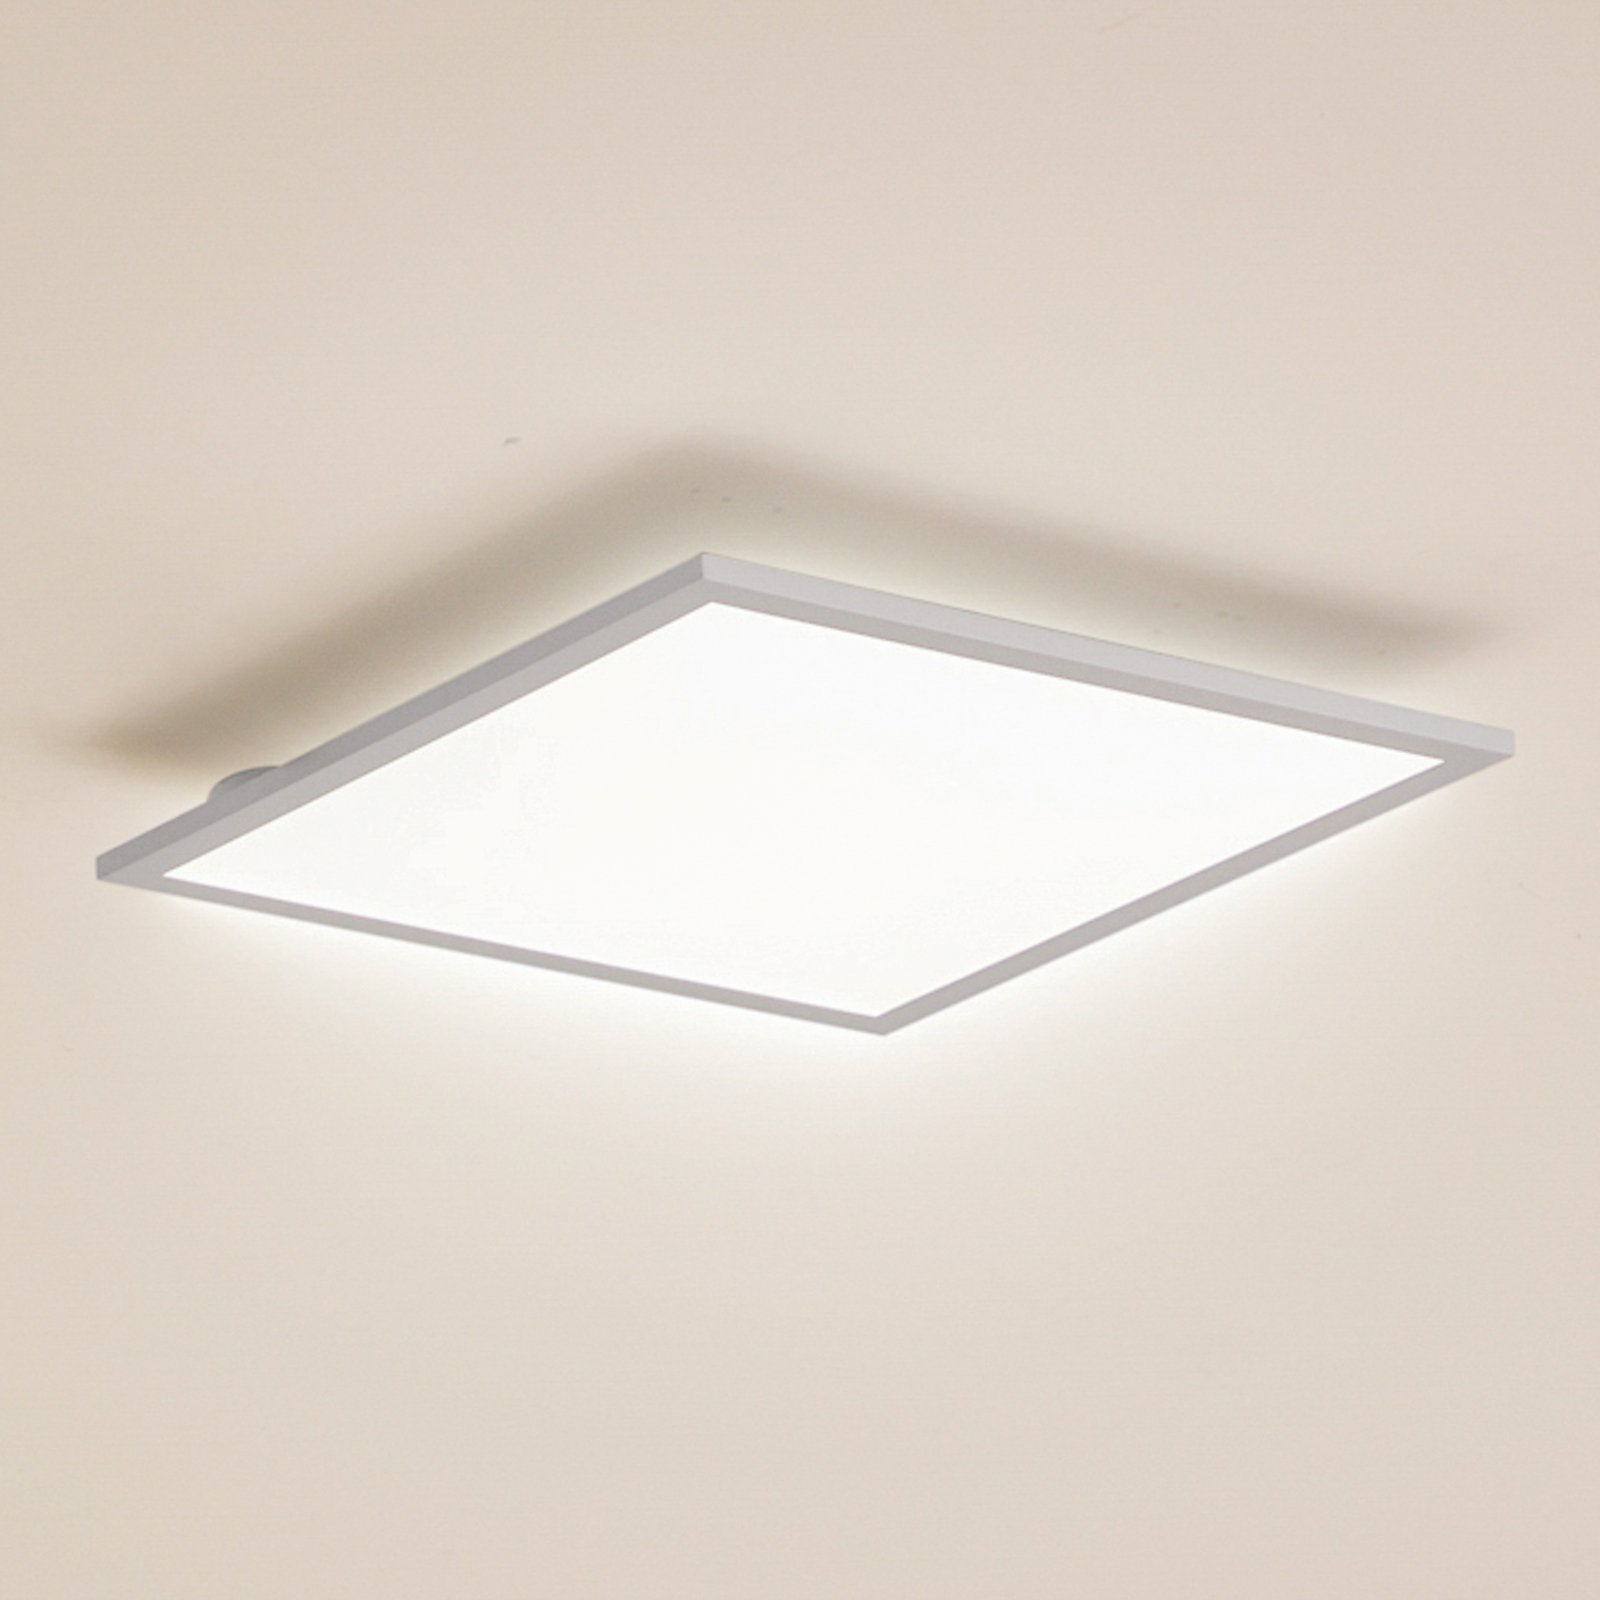 Lindby LED-paneel Enhife, valge, 39,5 x 39,5 cm, alumiiniumist